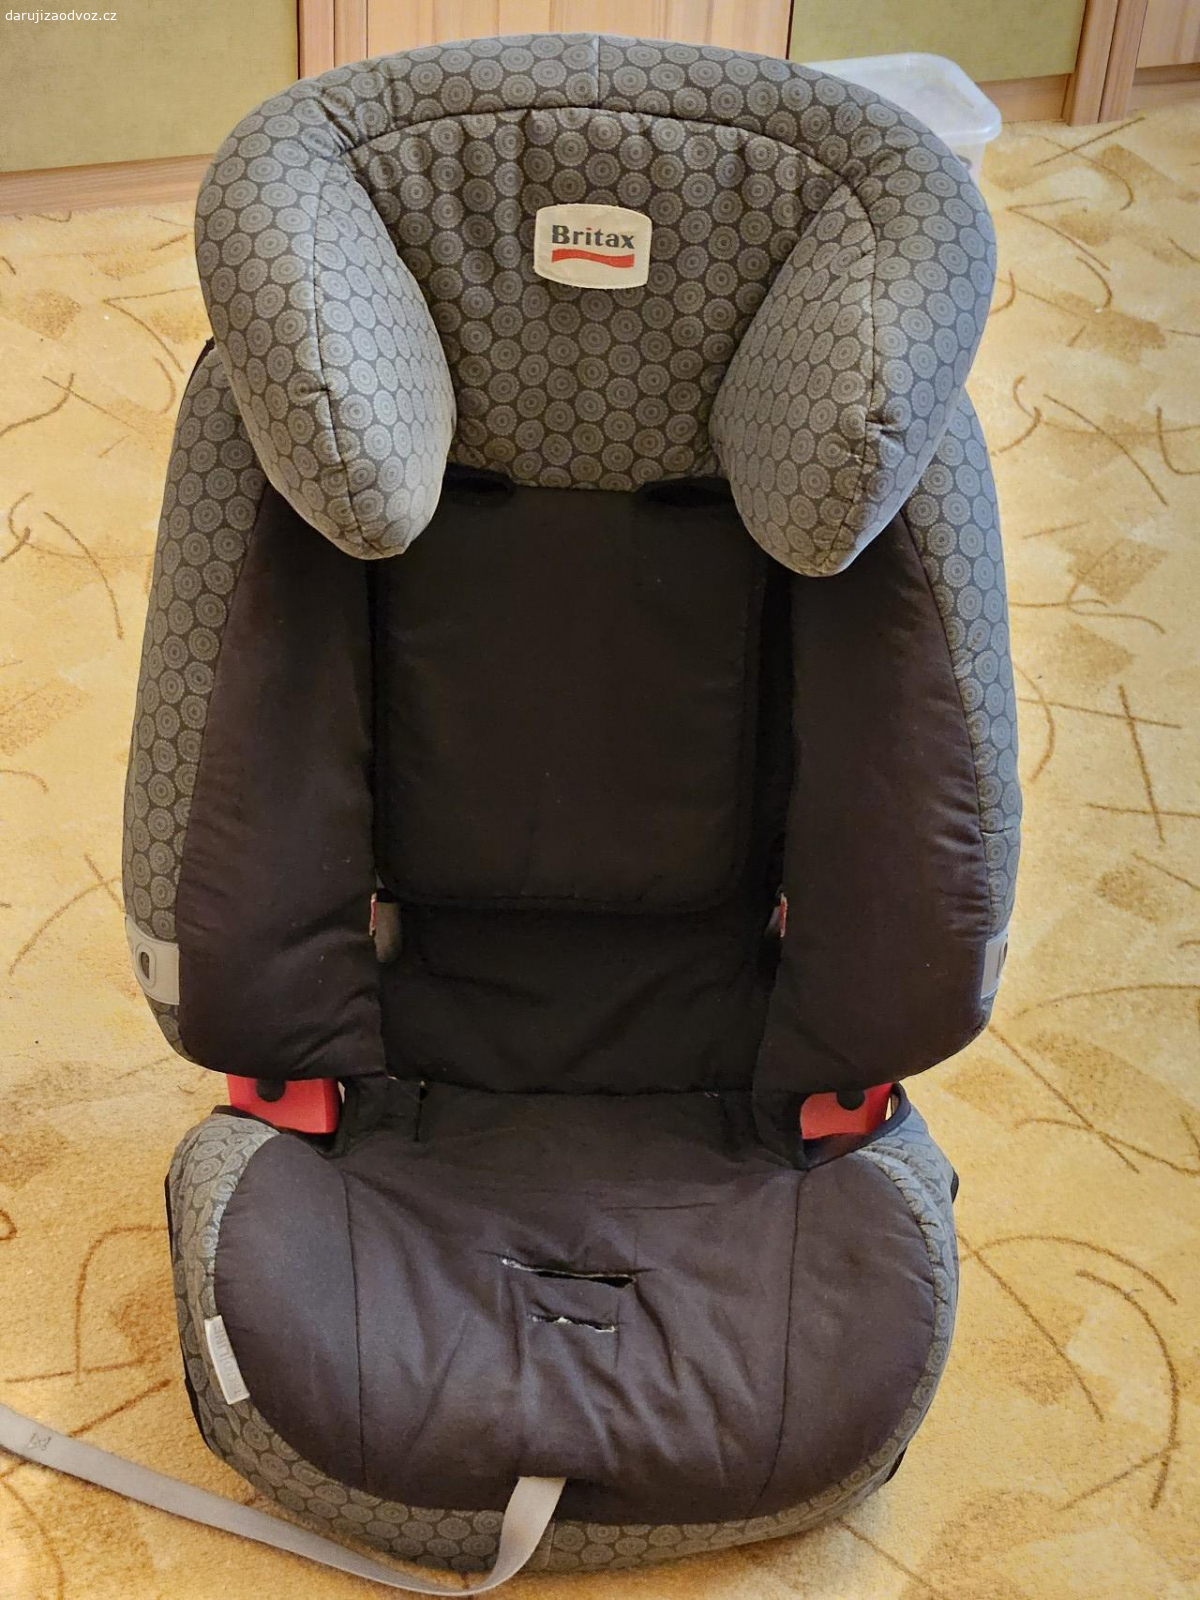 Dětská sedačka Britax Evolva. Rostoucí dětská sedačka 9-36 kg. Už dost stará, potah v horším stavu, ale třeba ji ještě někdo využije?